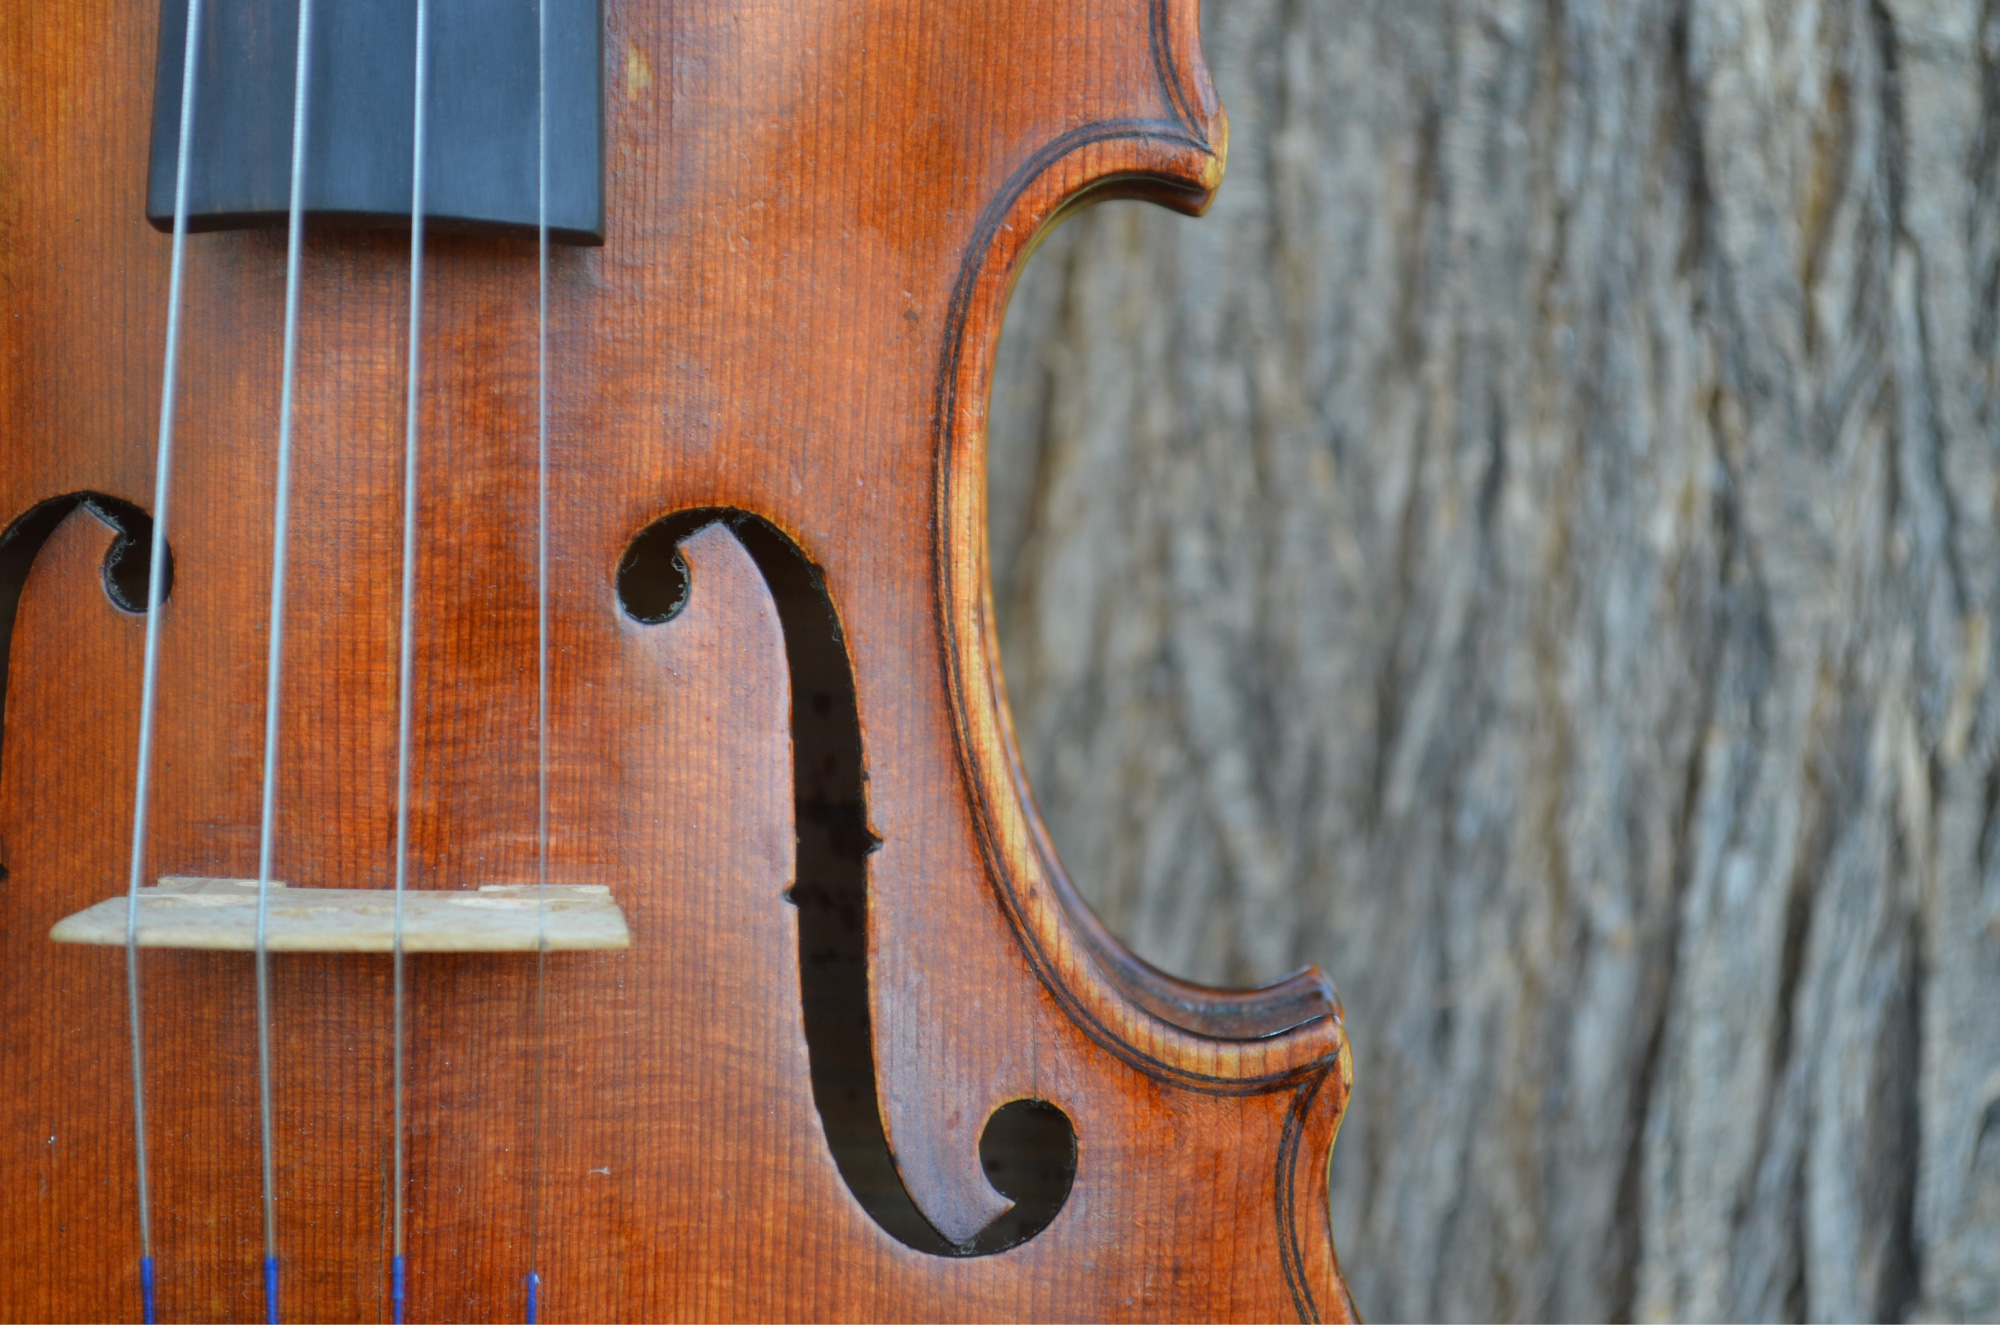 Instrument: Violin